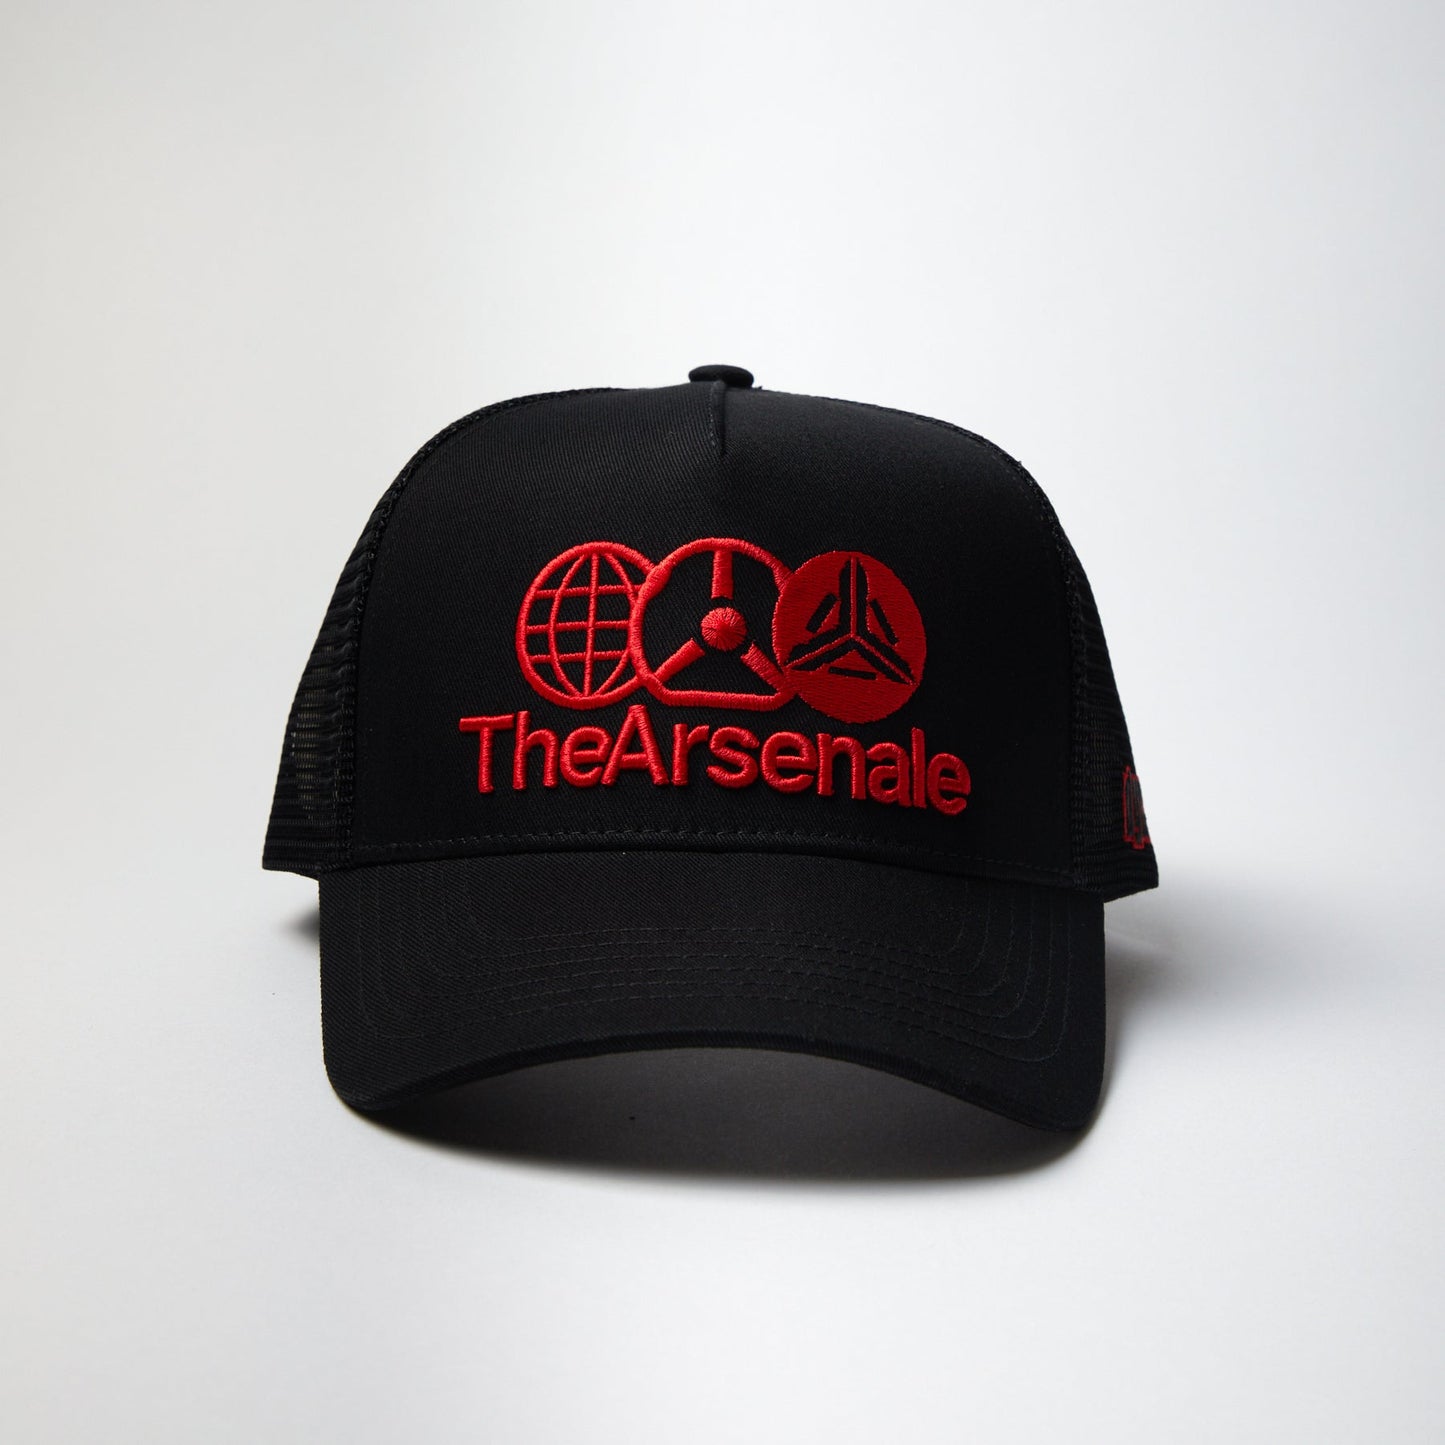 TheArsenale Trucker Cap Black Red - TheArsenale